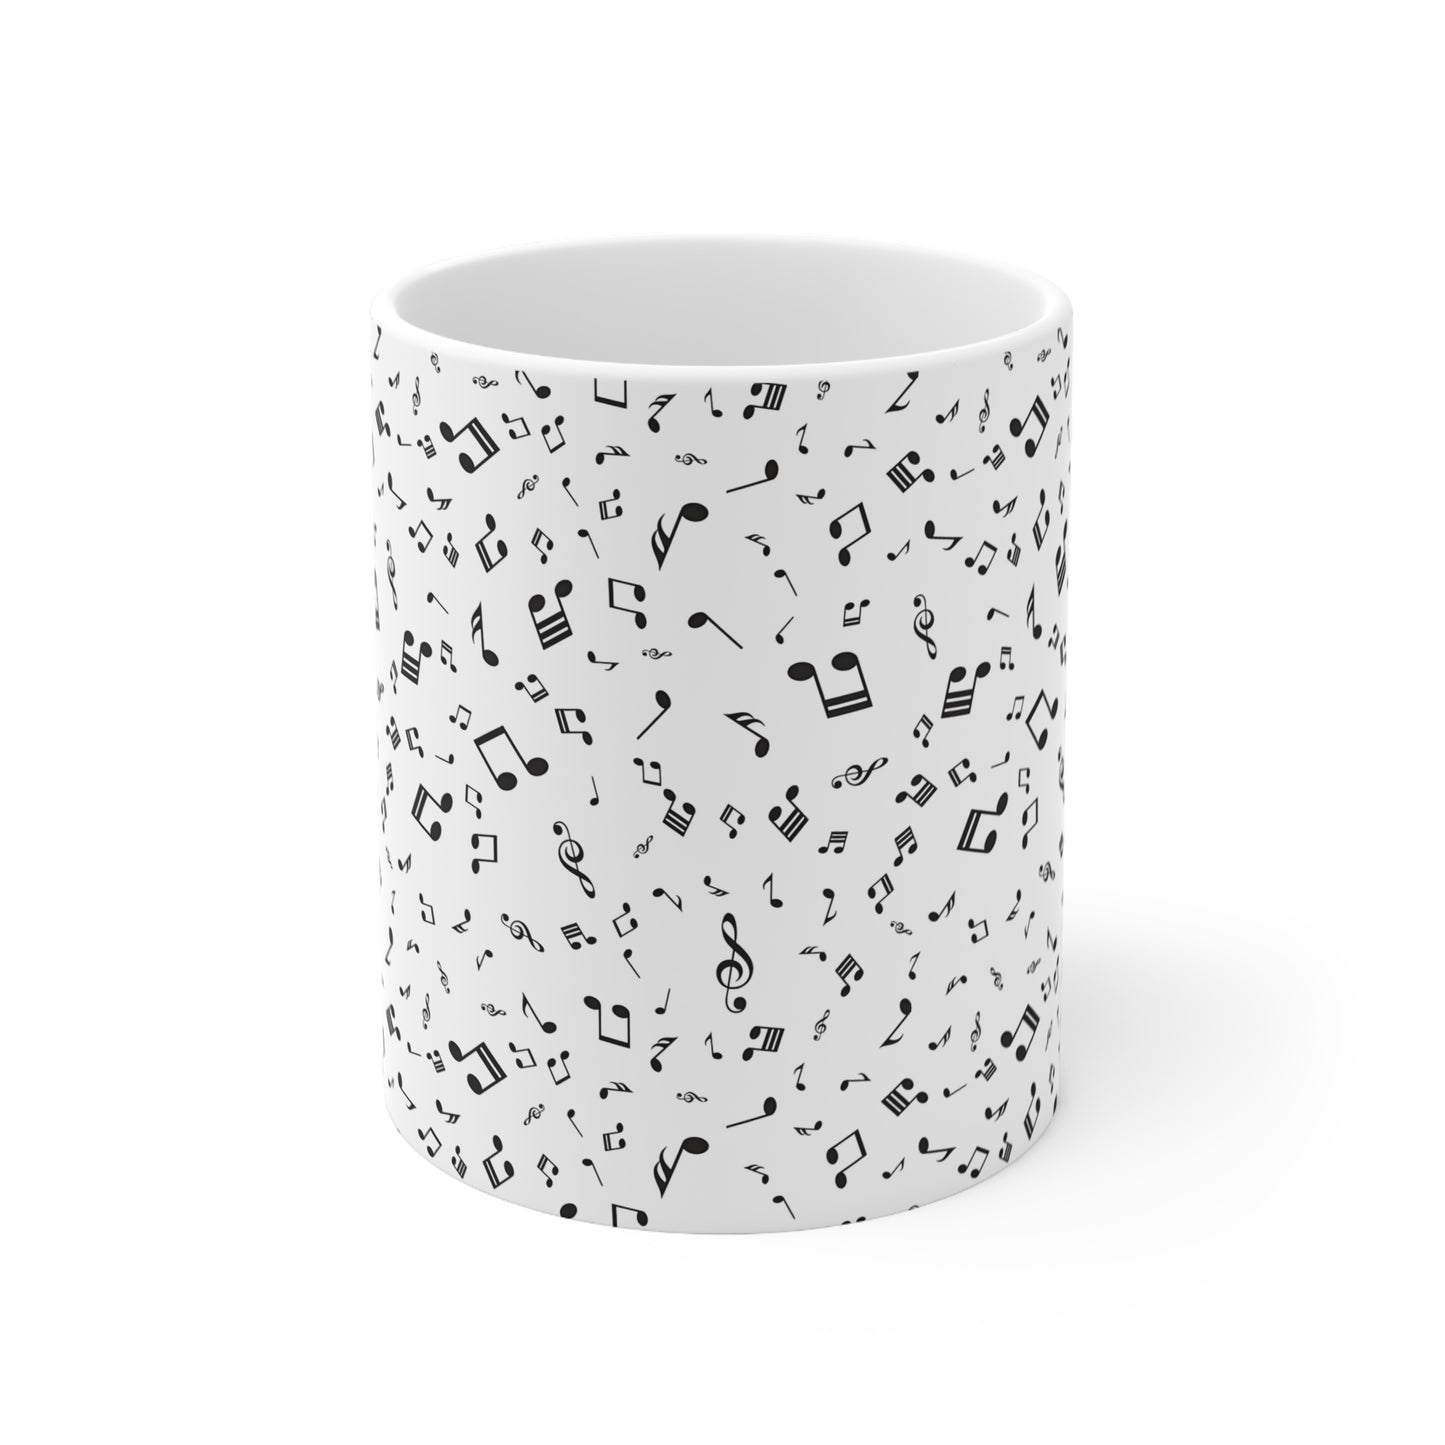 Musical Note Ceramic Mug, 11oz